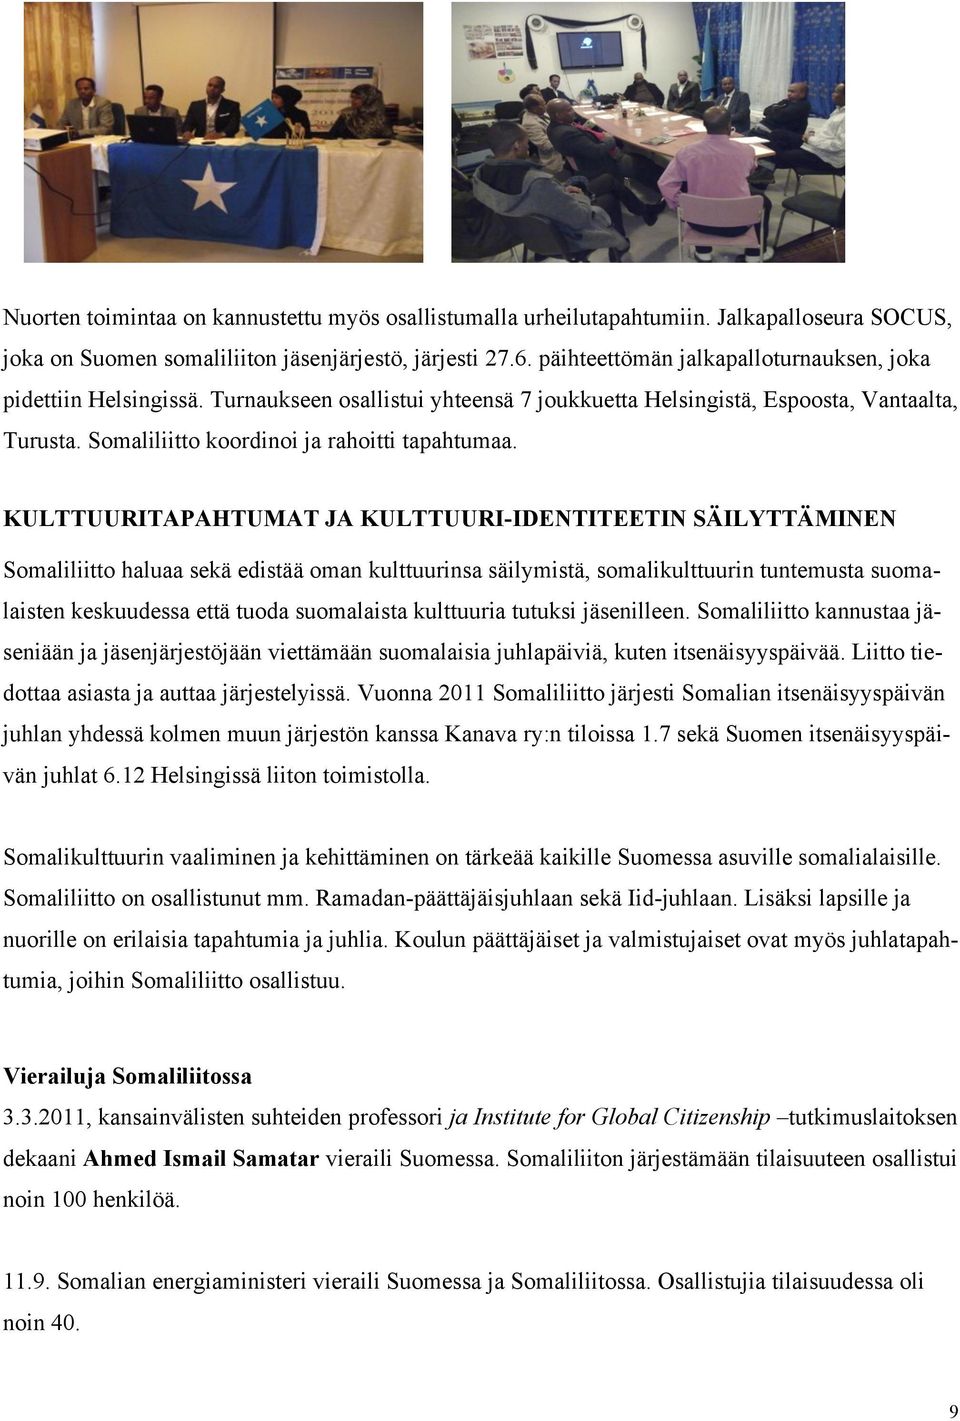 KULTTUURITAPAHTUMAT JA KULTTUURI-IDENTITEETIN SÄILYTTÄMINEN Somaliliitto haluaa sekä edistää oman kulttuurinsa säilymistä, somalikulttuurin tuntemusta suomalaisten keskuudessa että tuoda suomalaista